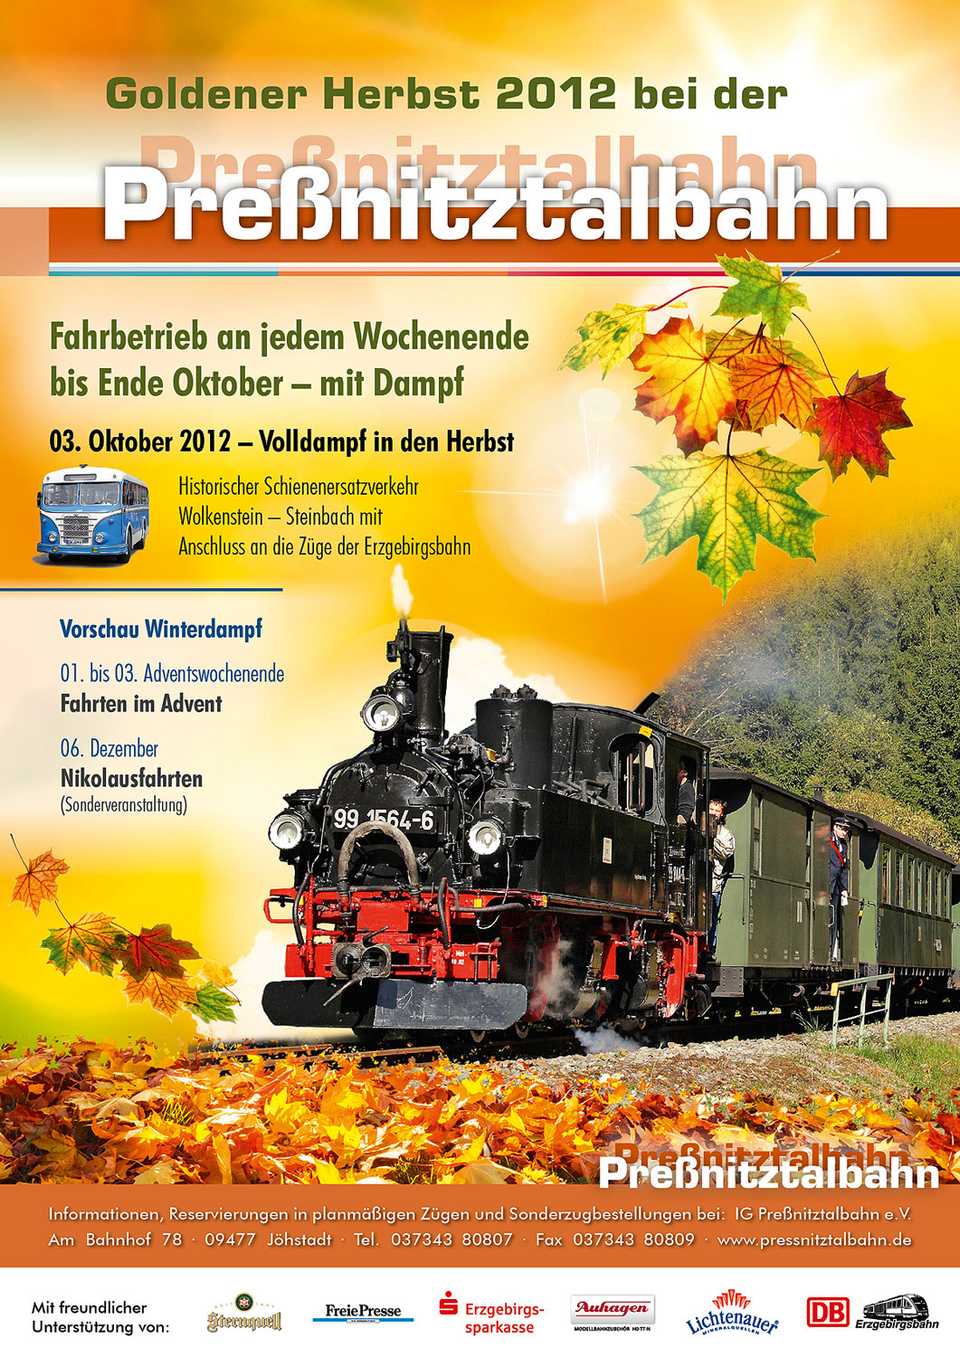 Veranstaltungsposter "Goldener Herbst 2012 bei der Preßnitztalbahn"